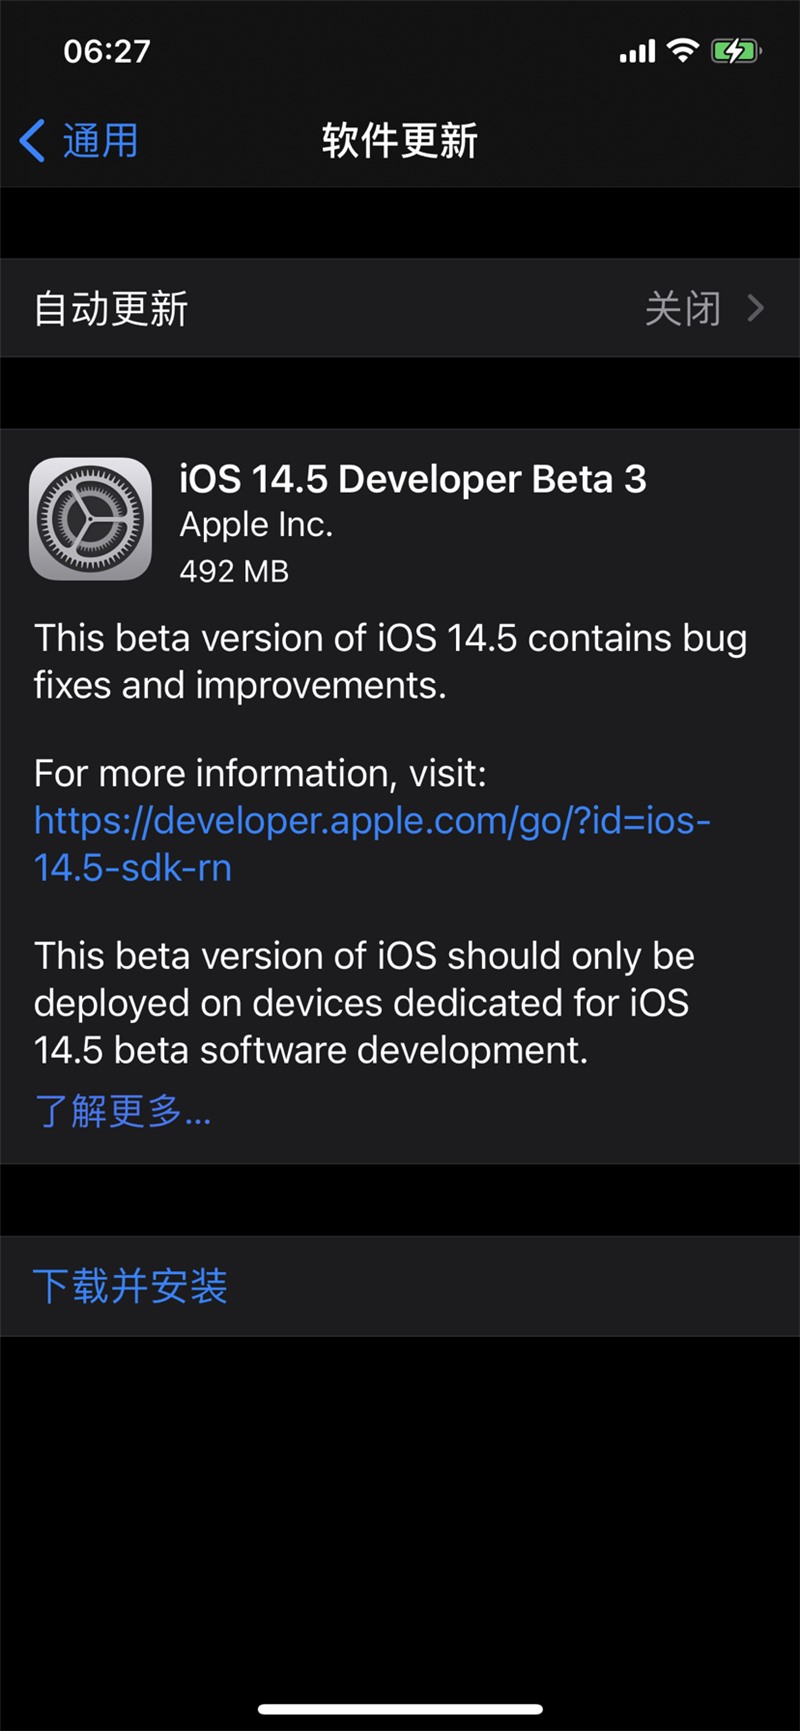 苹果发布 iOS 14.5 与 iPadOS 14.5 beta 3